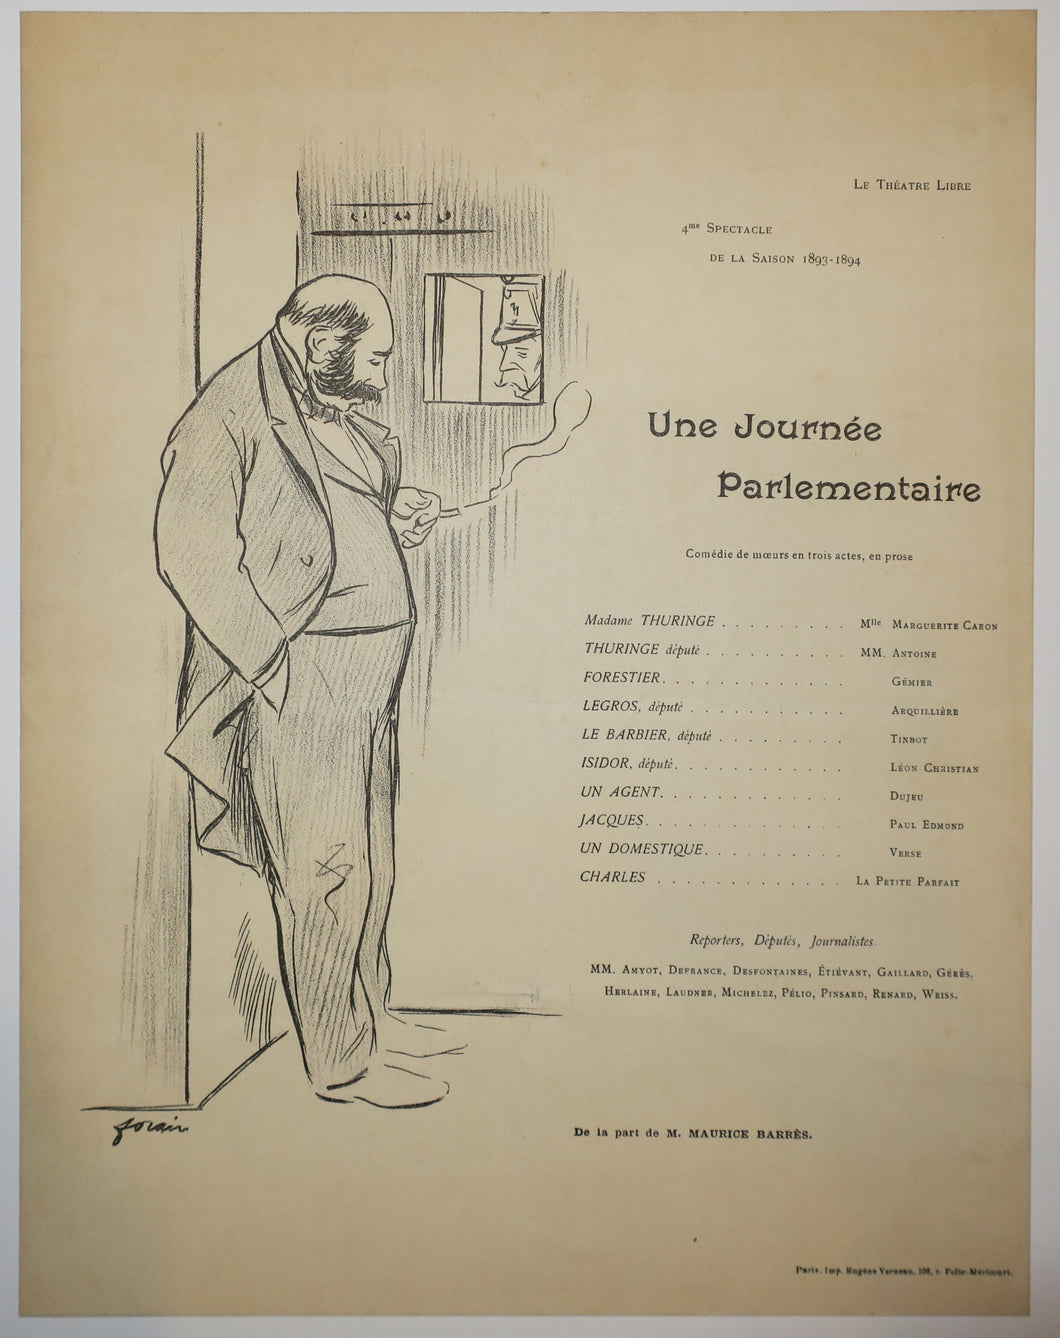 Programme pour Le Théâtre Libre: Une Journée Parlementaire, par Maurice Barrès, 4ème spectacle de la saison 1893-1894.